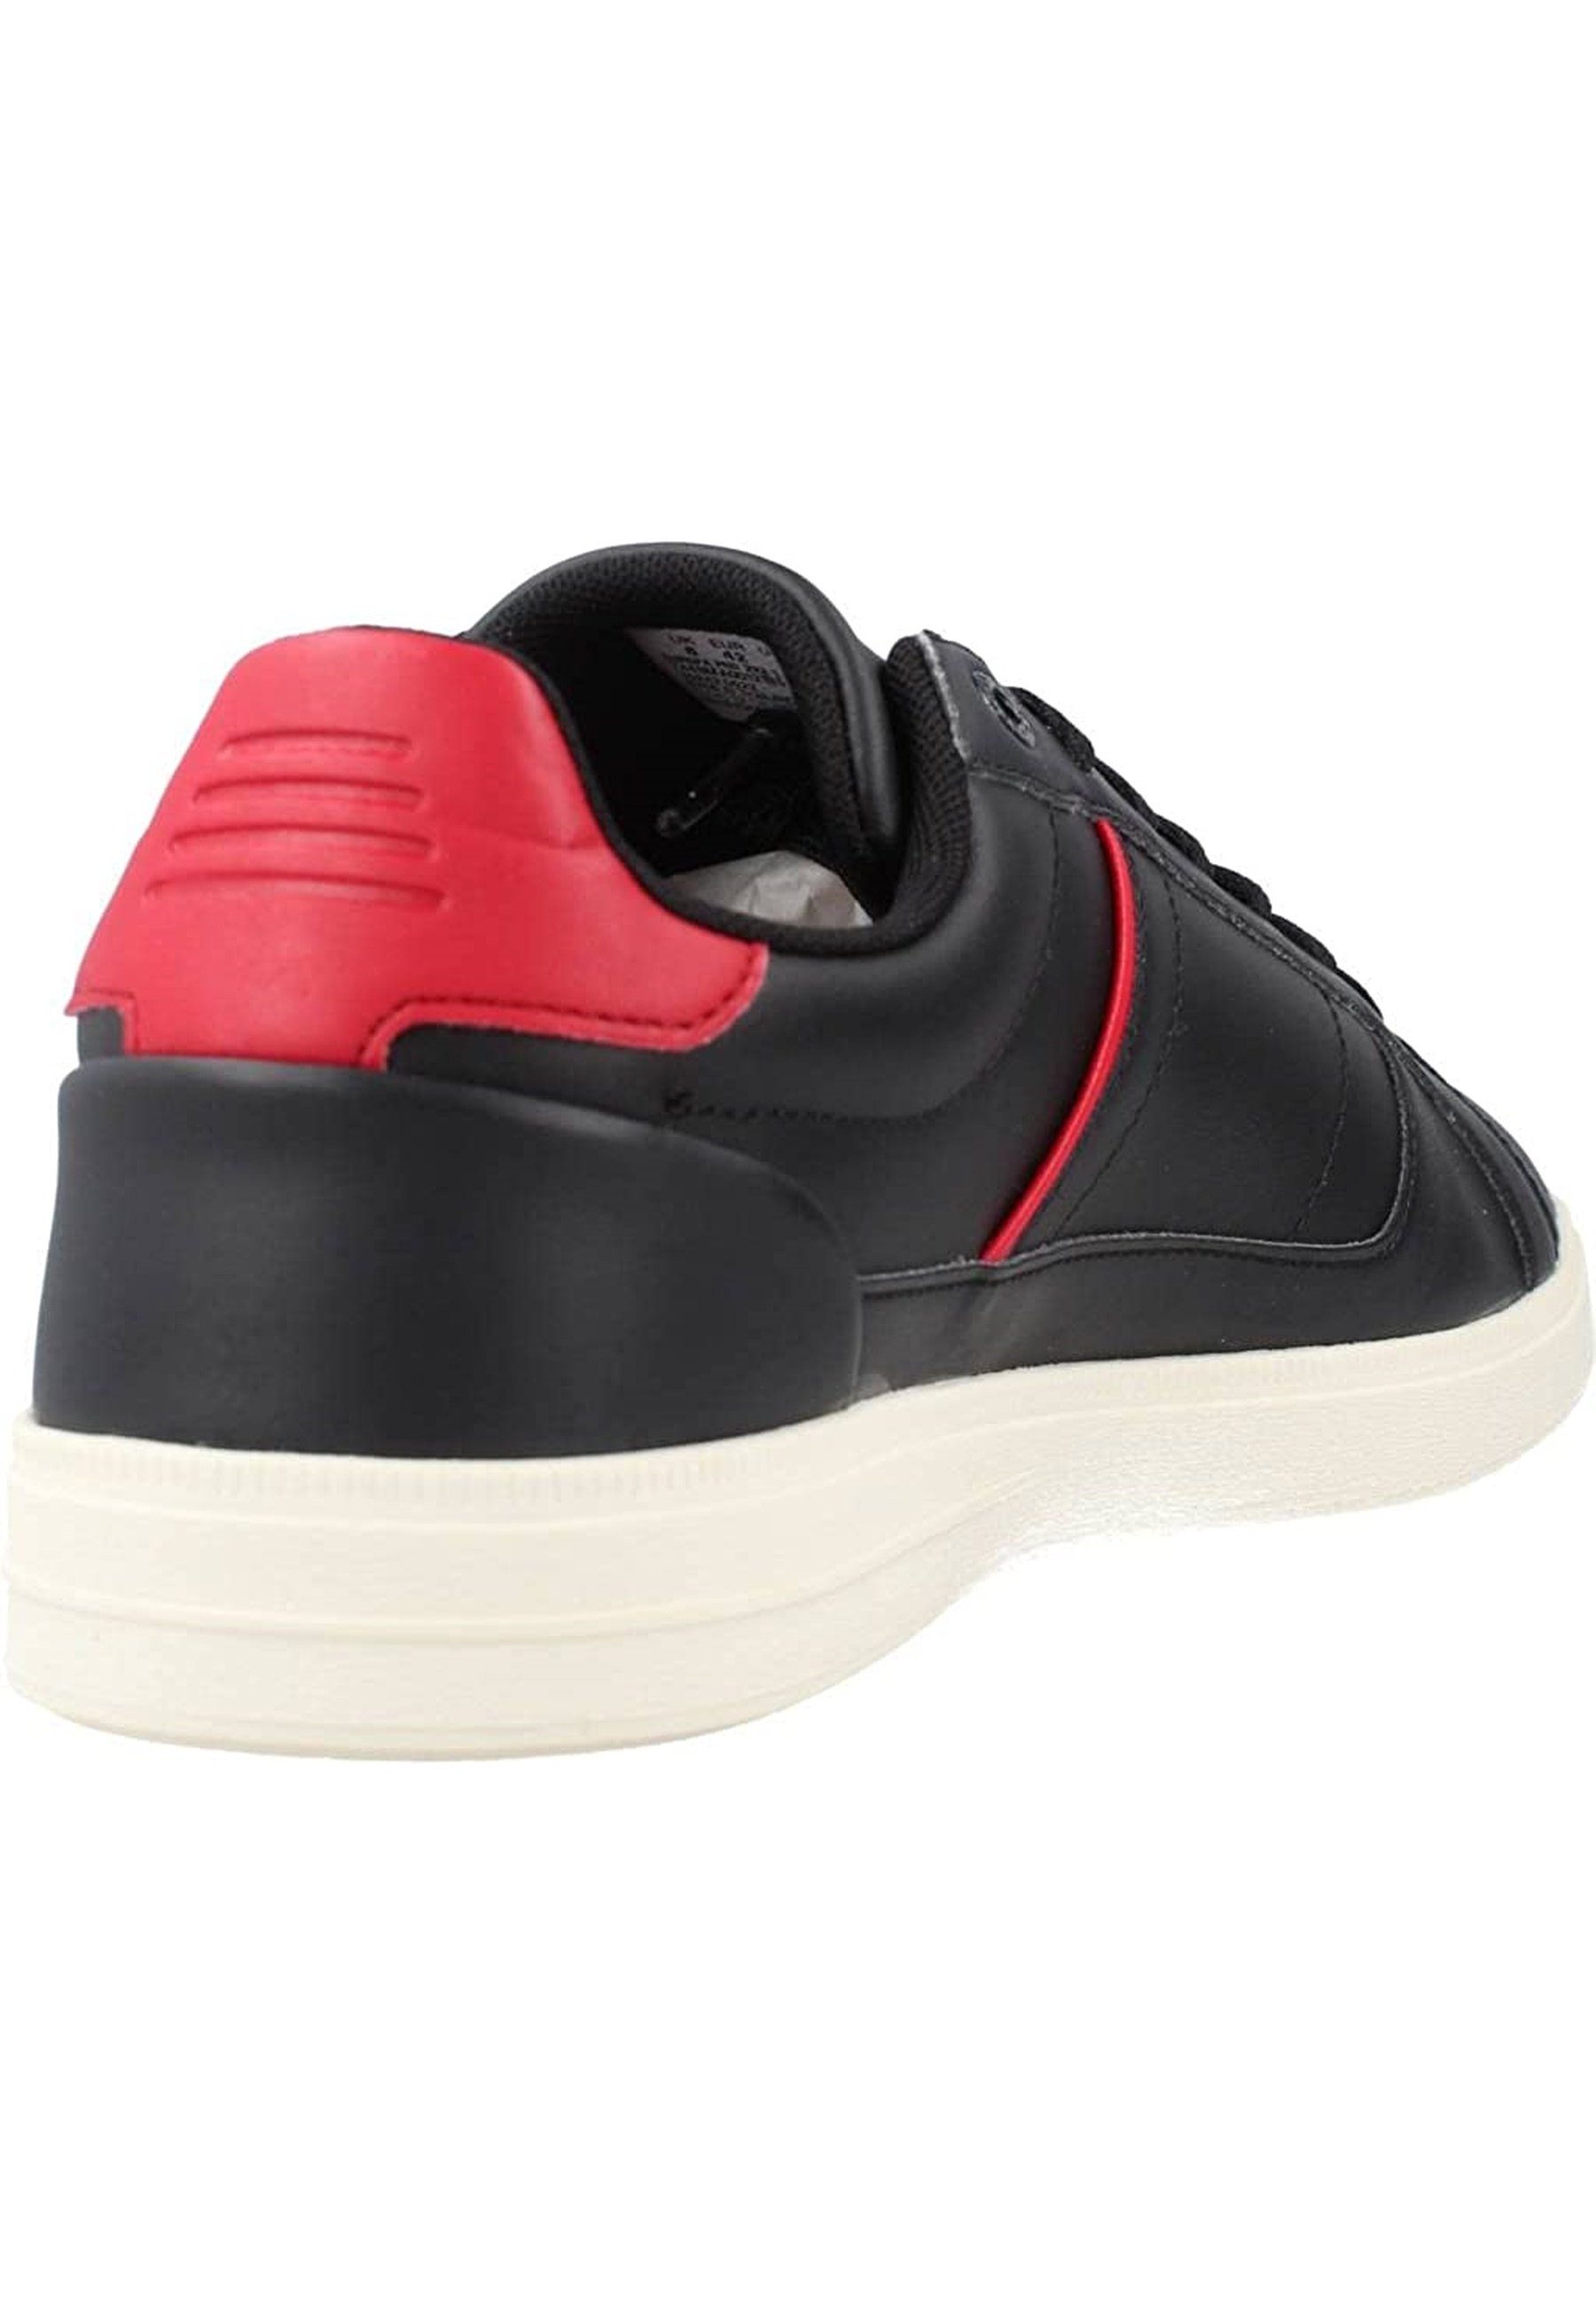 Lacoste Sportschuhe mit schwarz aus Sneaker Sneaker EUROPA Leder 222 PRO